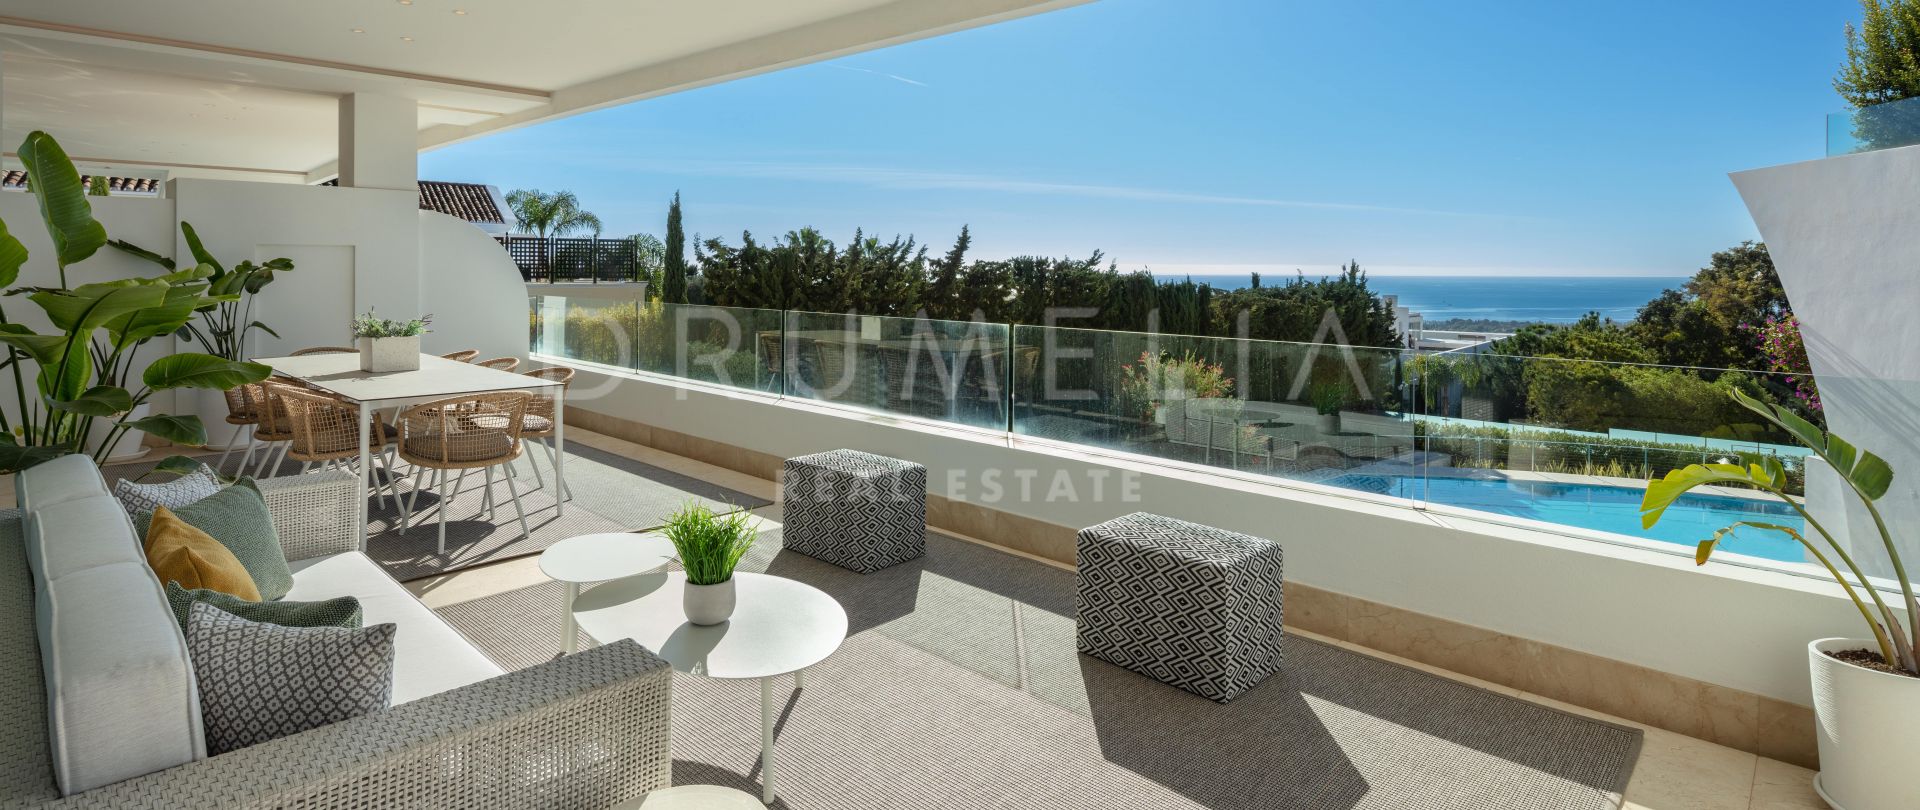 Reserva 10 - Elegant high-end duplex penthouse met zeezicht te koop in Sierra Blanca, Marbella's Golden Mile